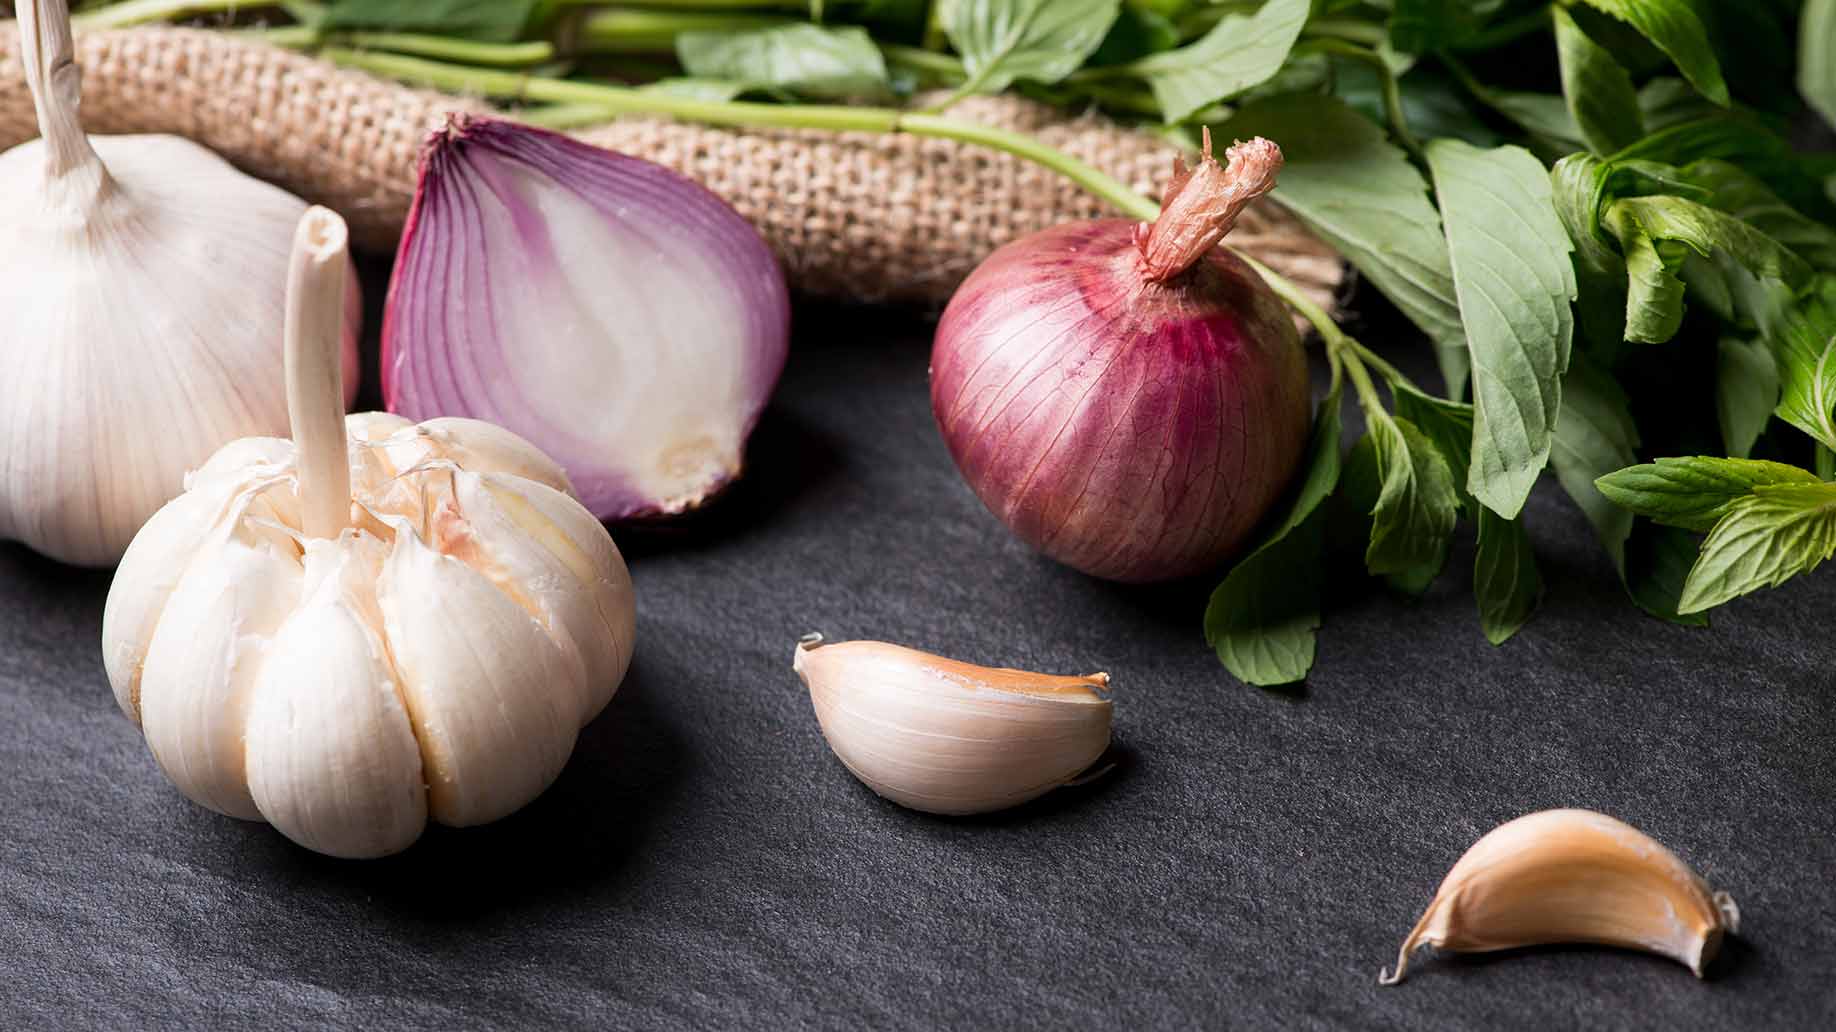 garlic onions hair loss thinning balding natural remedies